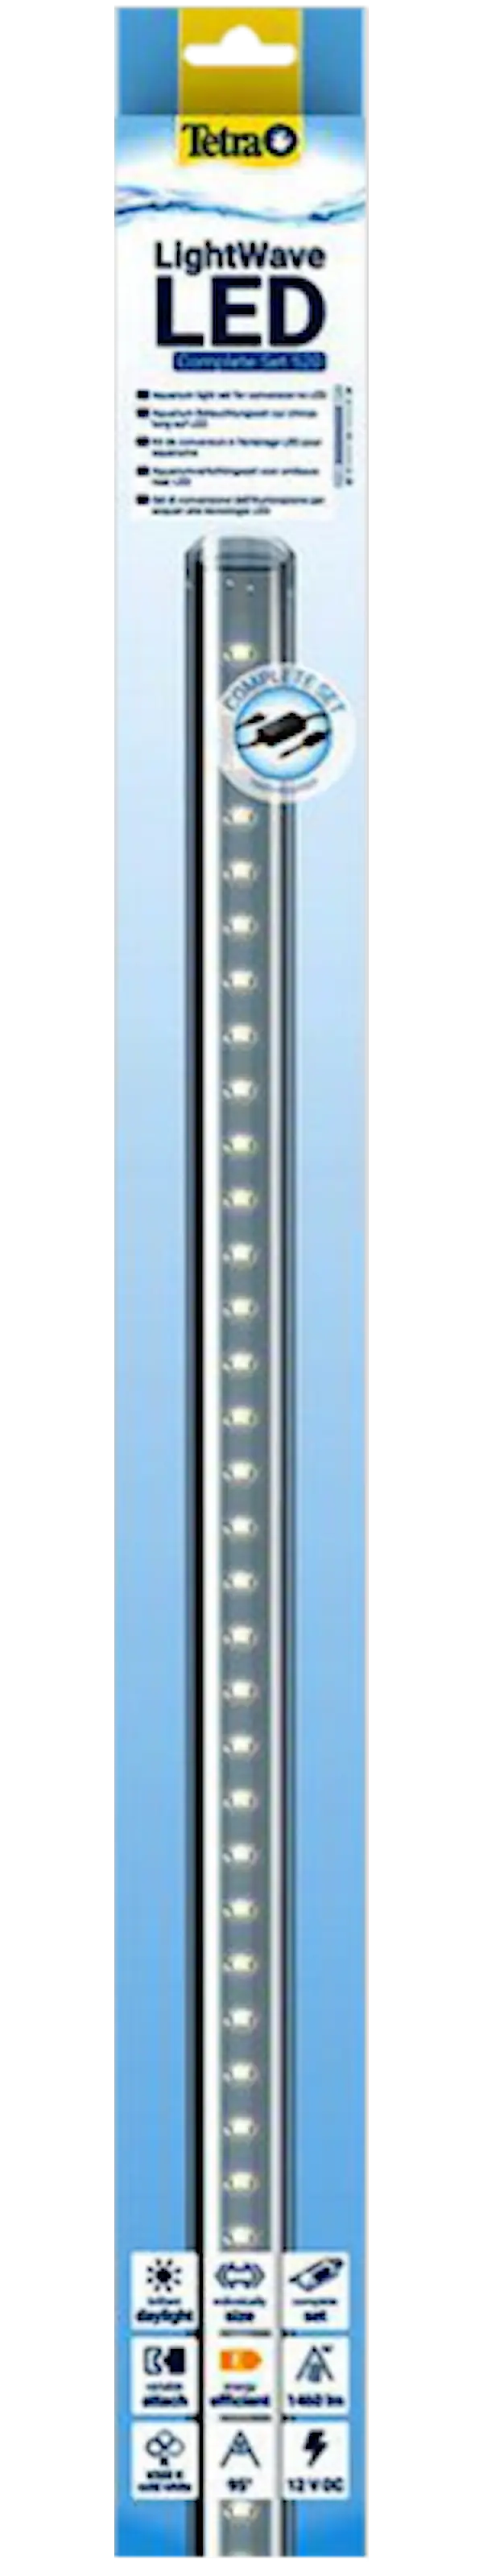 LightWave LED-valaisin, 520 - 600 mm